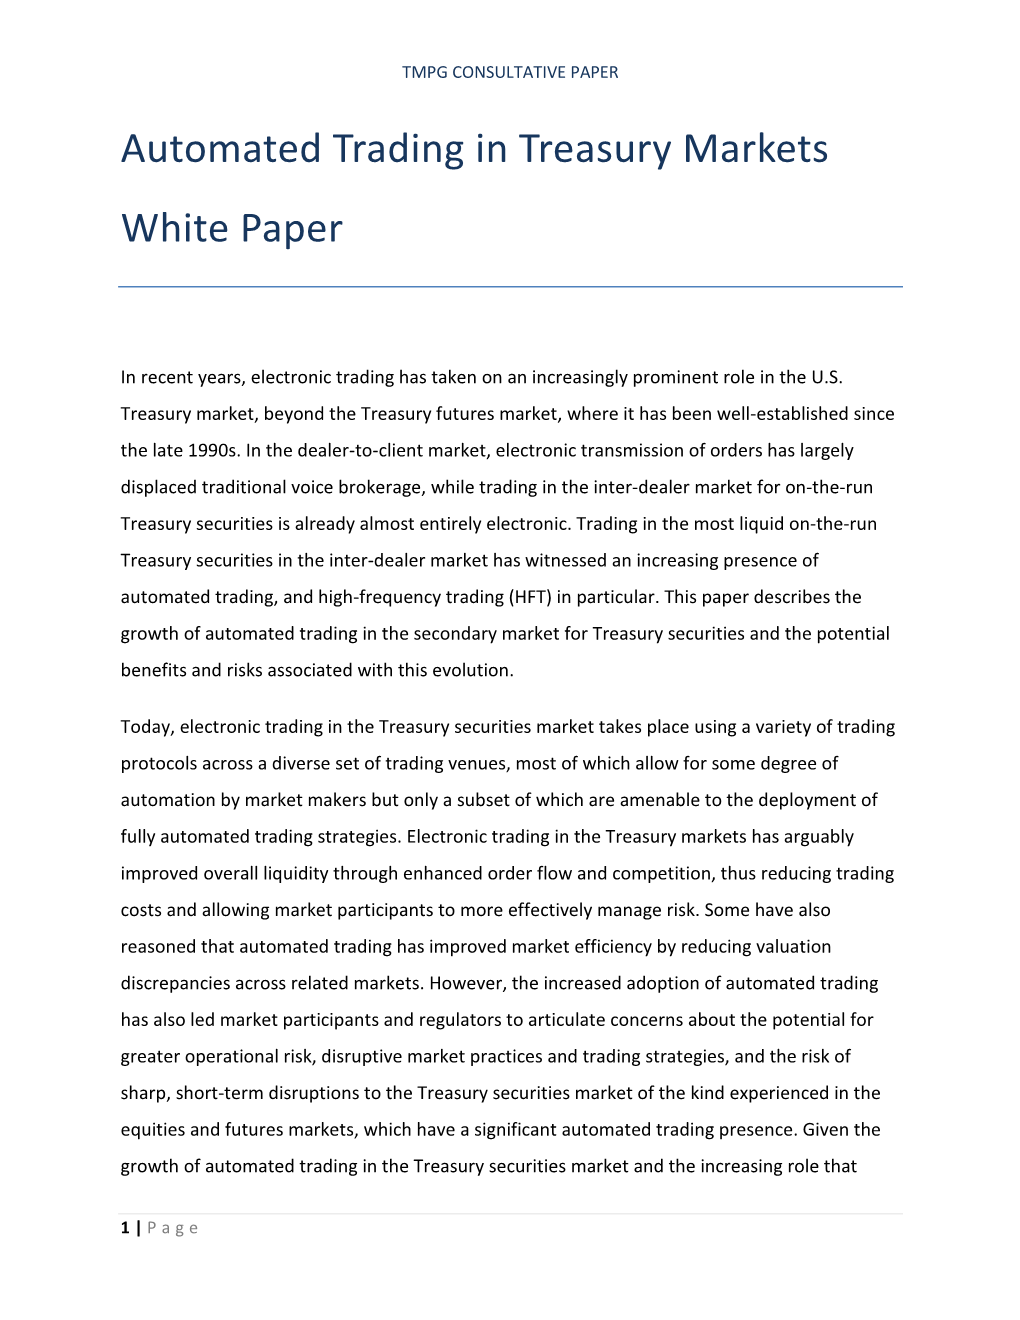 TMPG HFT White Paper